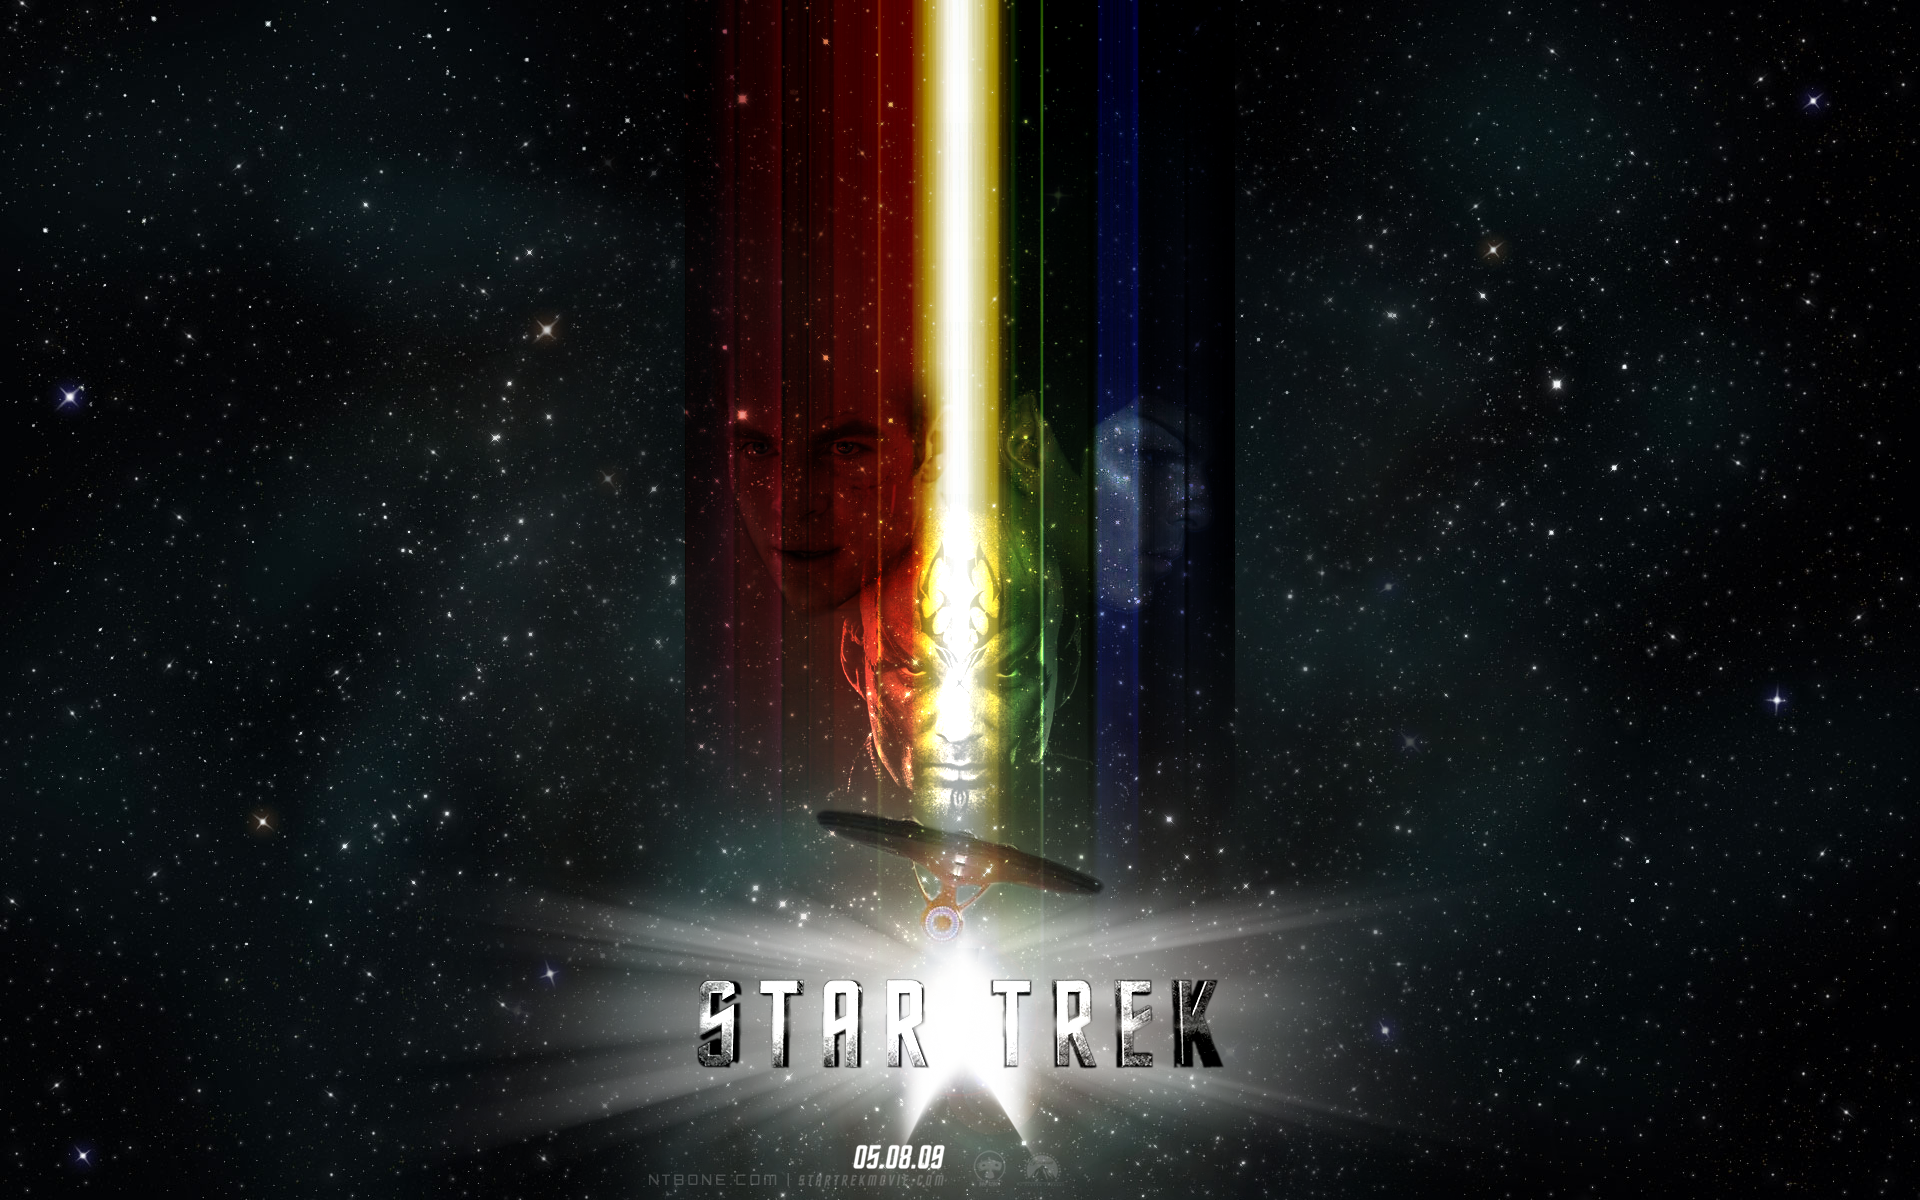 звездный путь, Star Trek логотипы - обои на рабочий стол